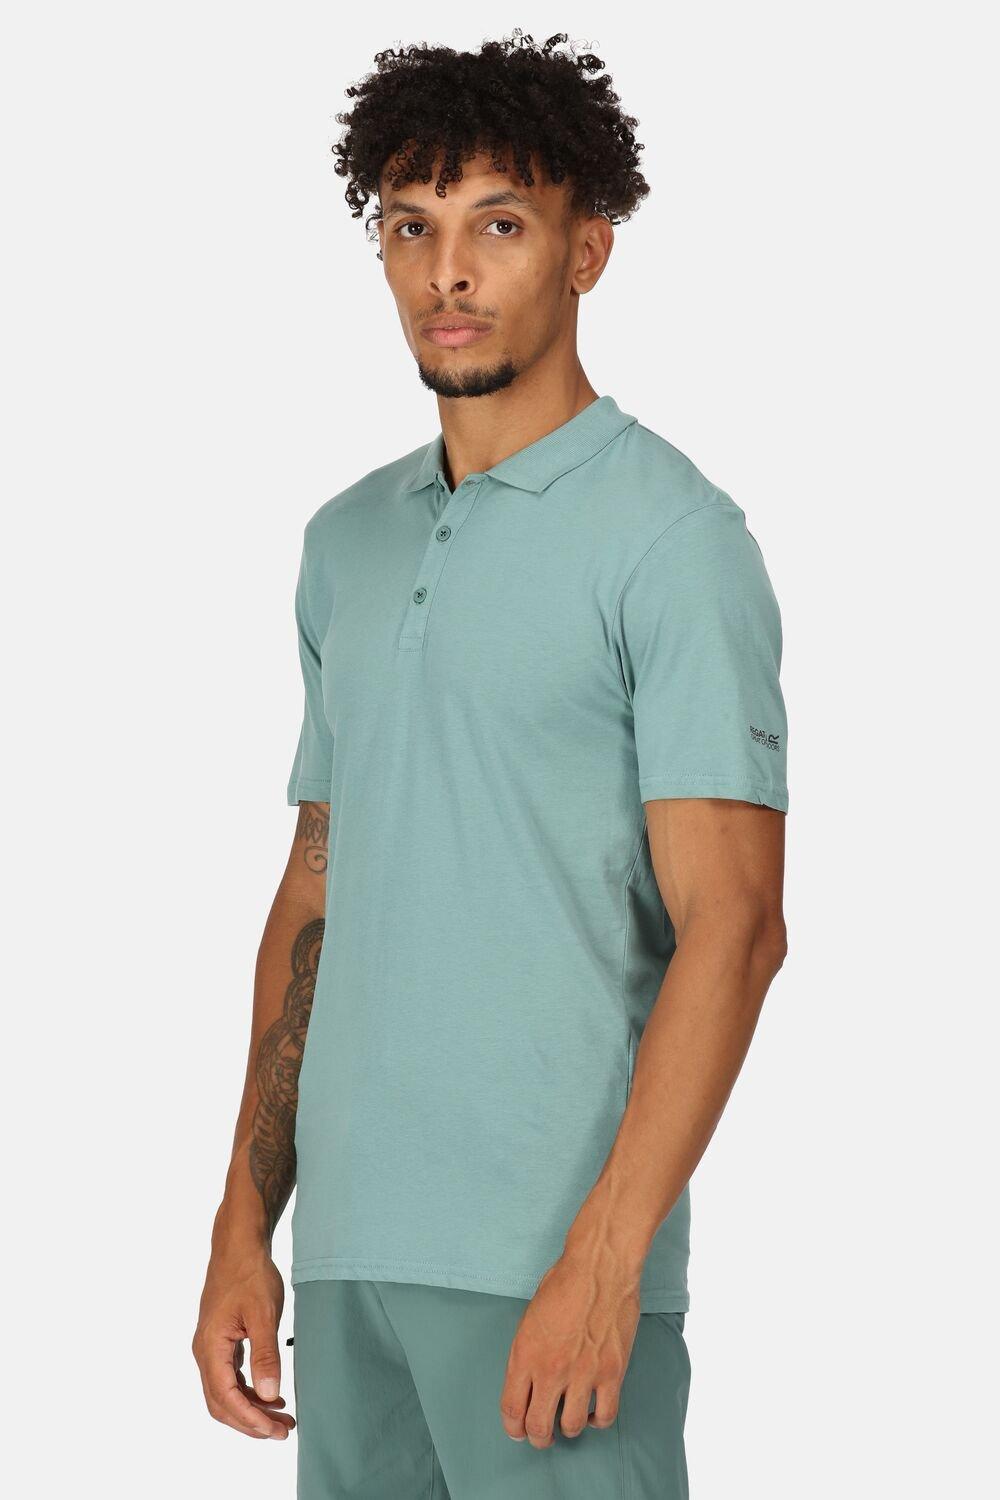 цена Рубашка поло с короткими рукавами из хлопка Coolweave 'Sinton' Regatta, зеленый